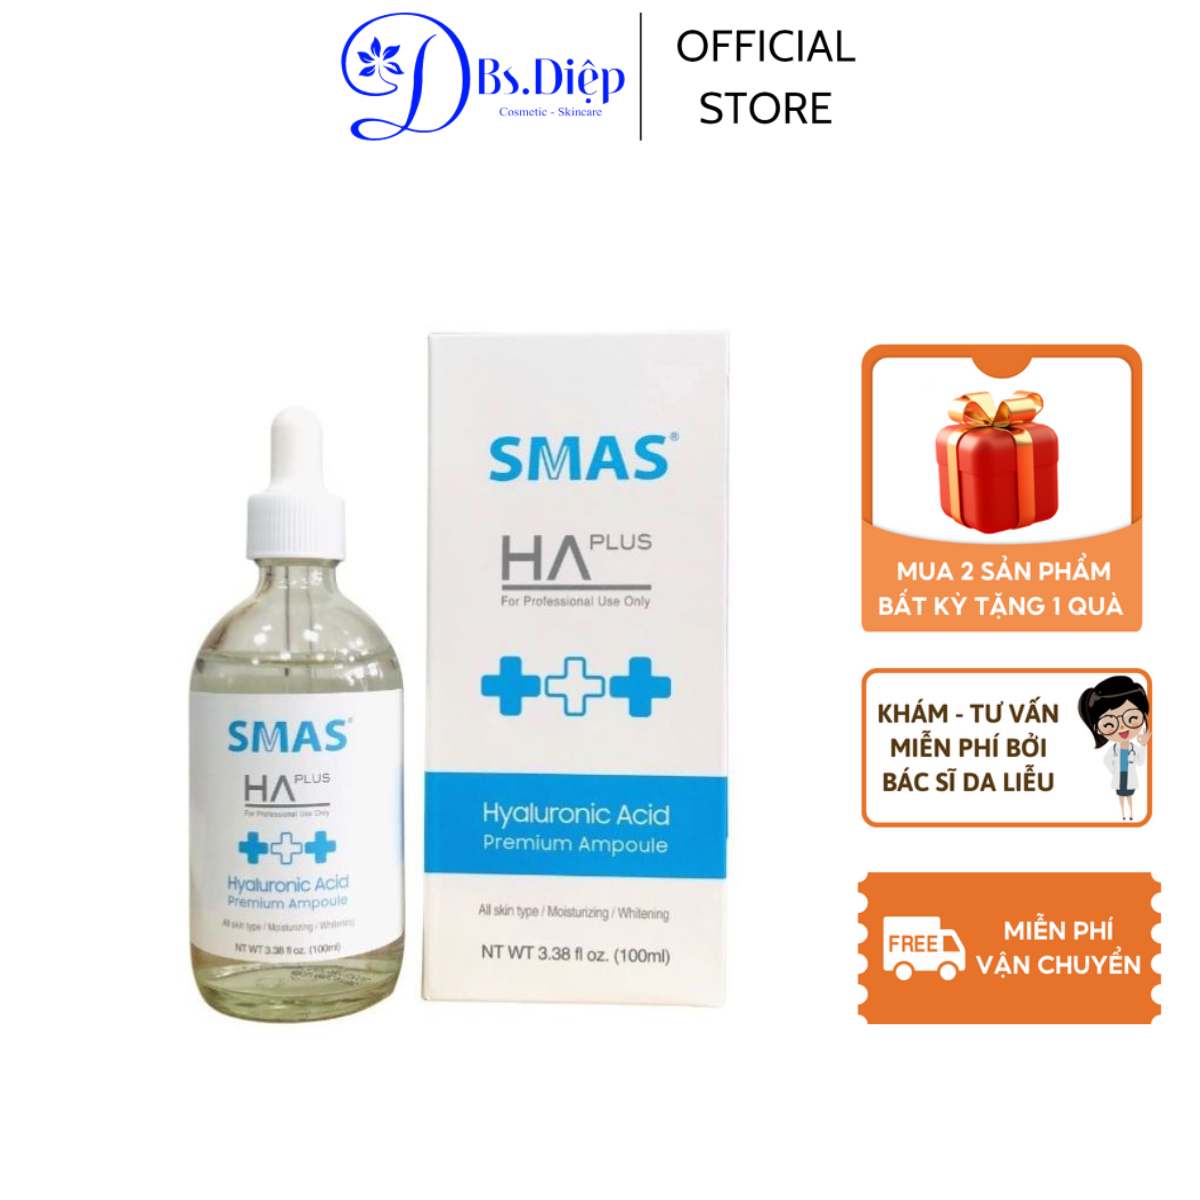 (BS Diệp khuyên dùng) Tinh chất cấp nước dưỡng ẩm SMAS HA PLUS (100ml)